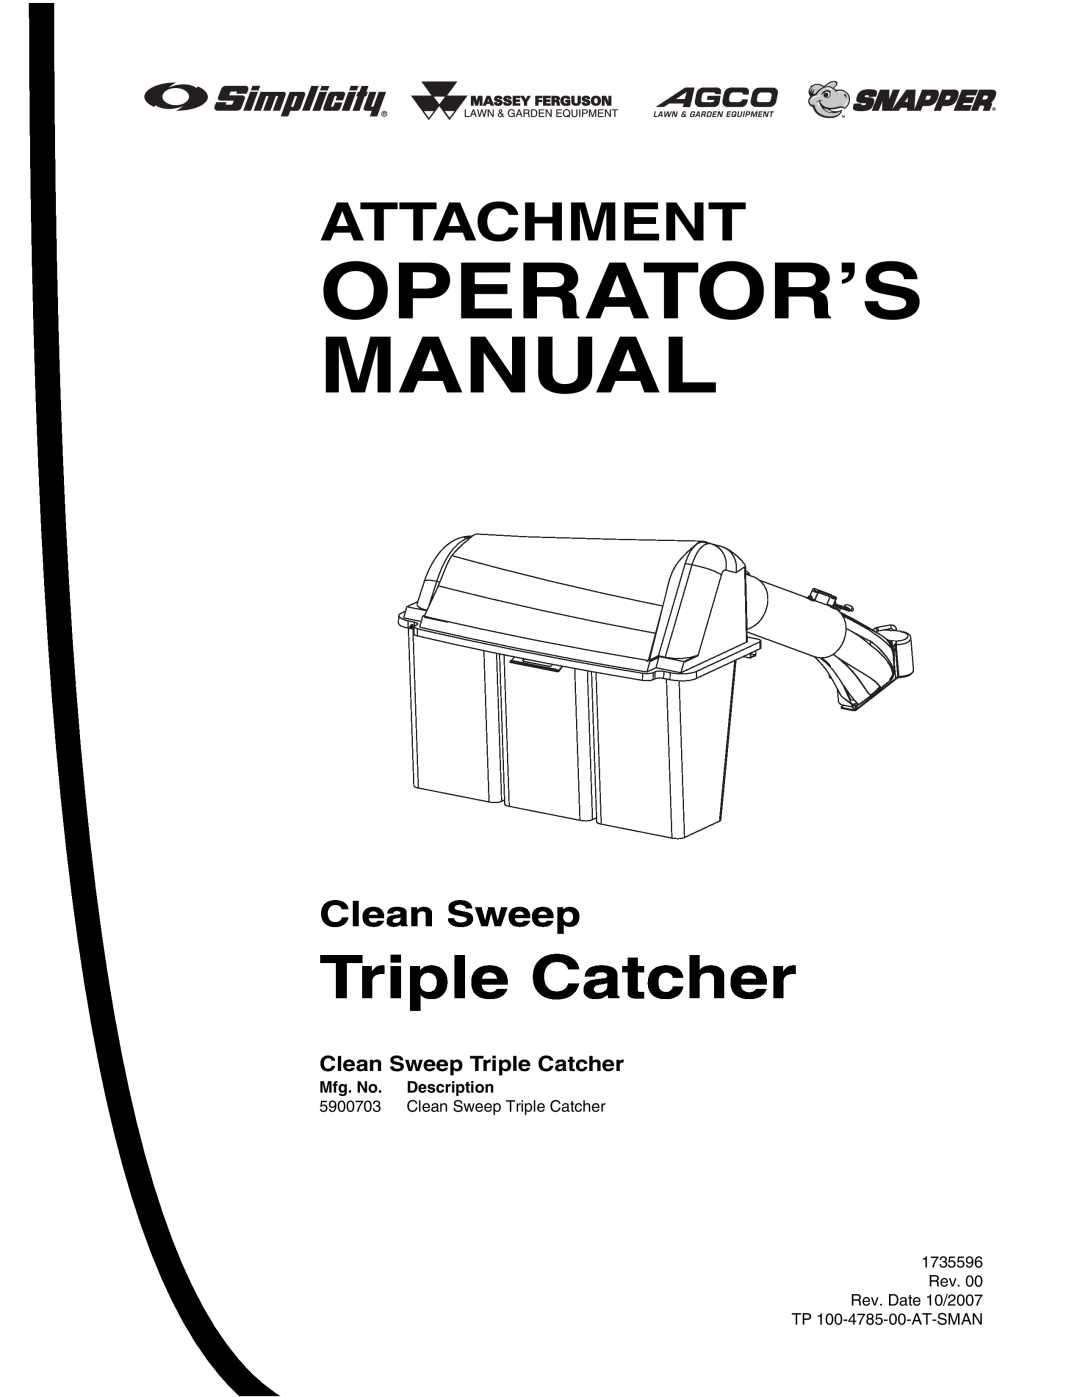 Briggs & Stratton 5900703 manual Clean Sweep Triple Catcher, Operator’S Manual, Attachment, Mfg. No. Description 